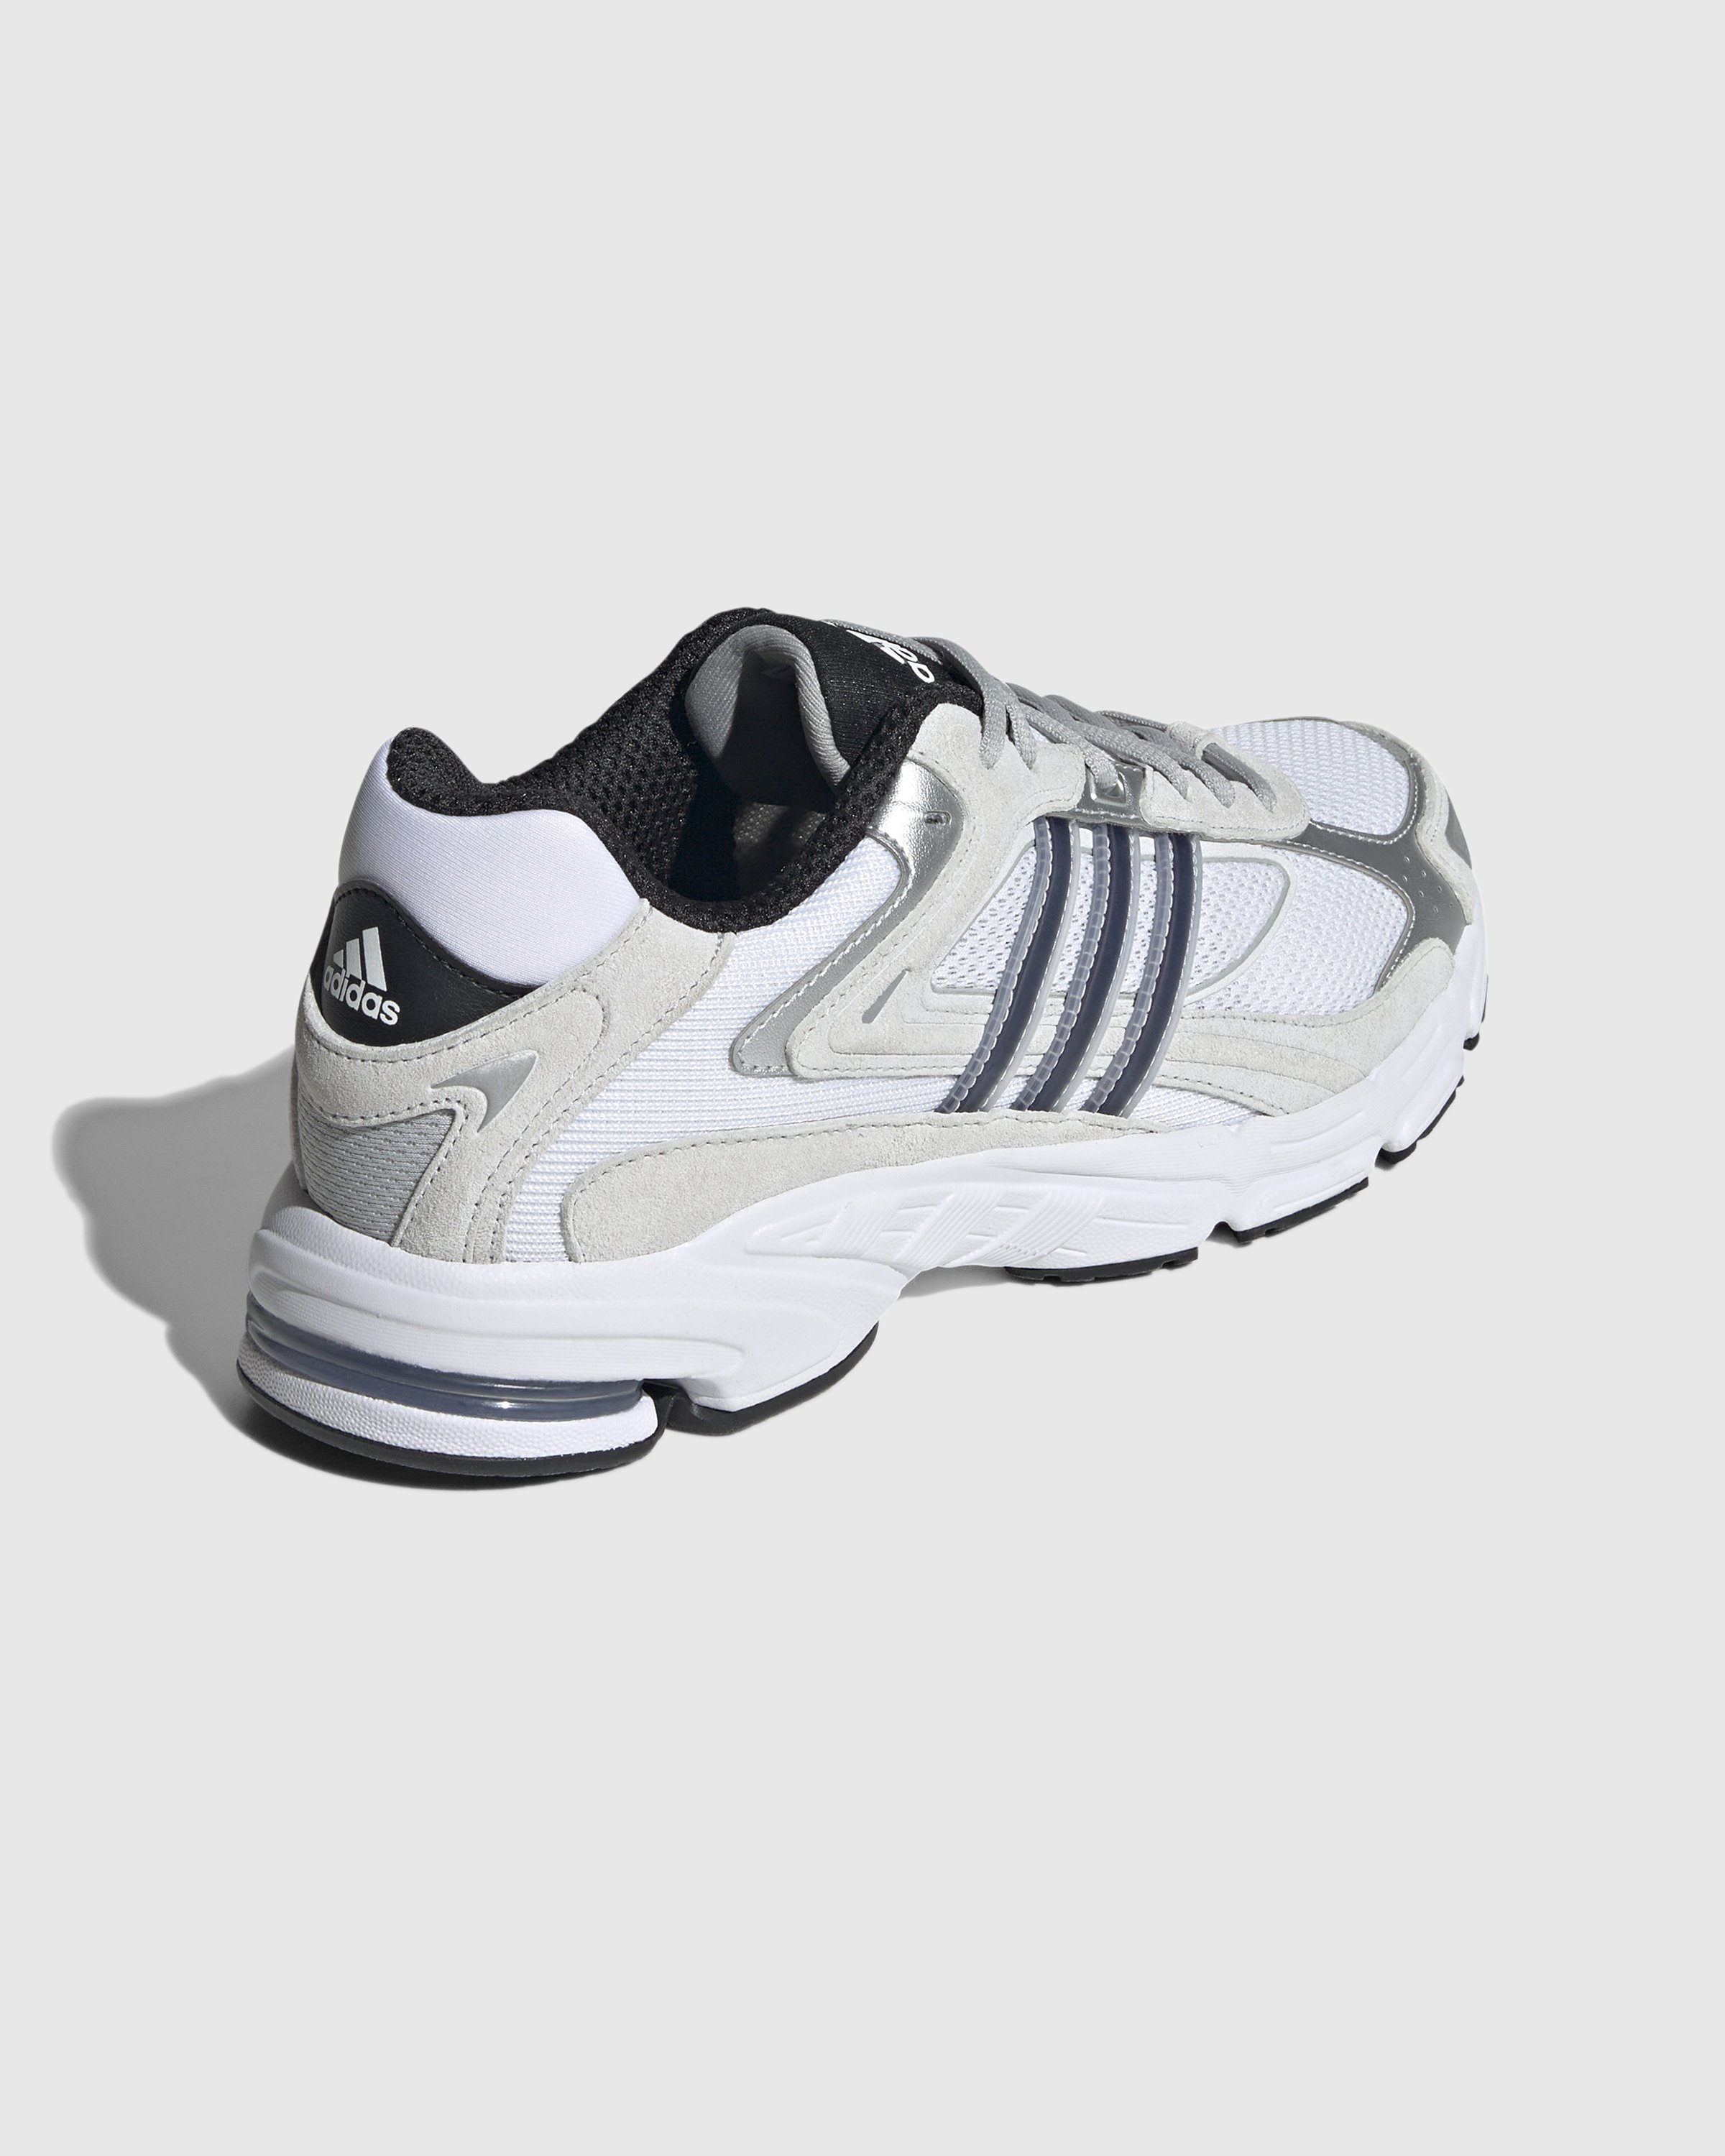 Adidas - Response CL White/Black - Footwear - White - Image 4